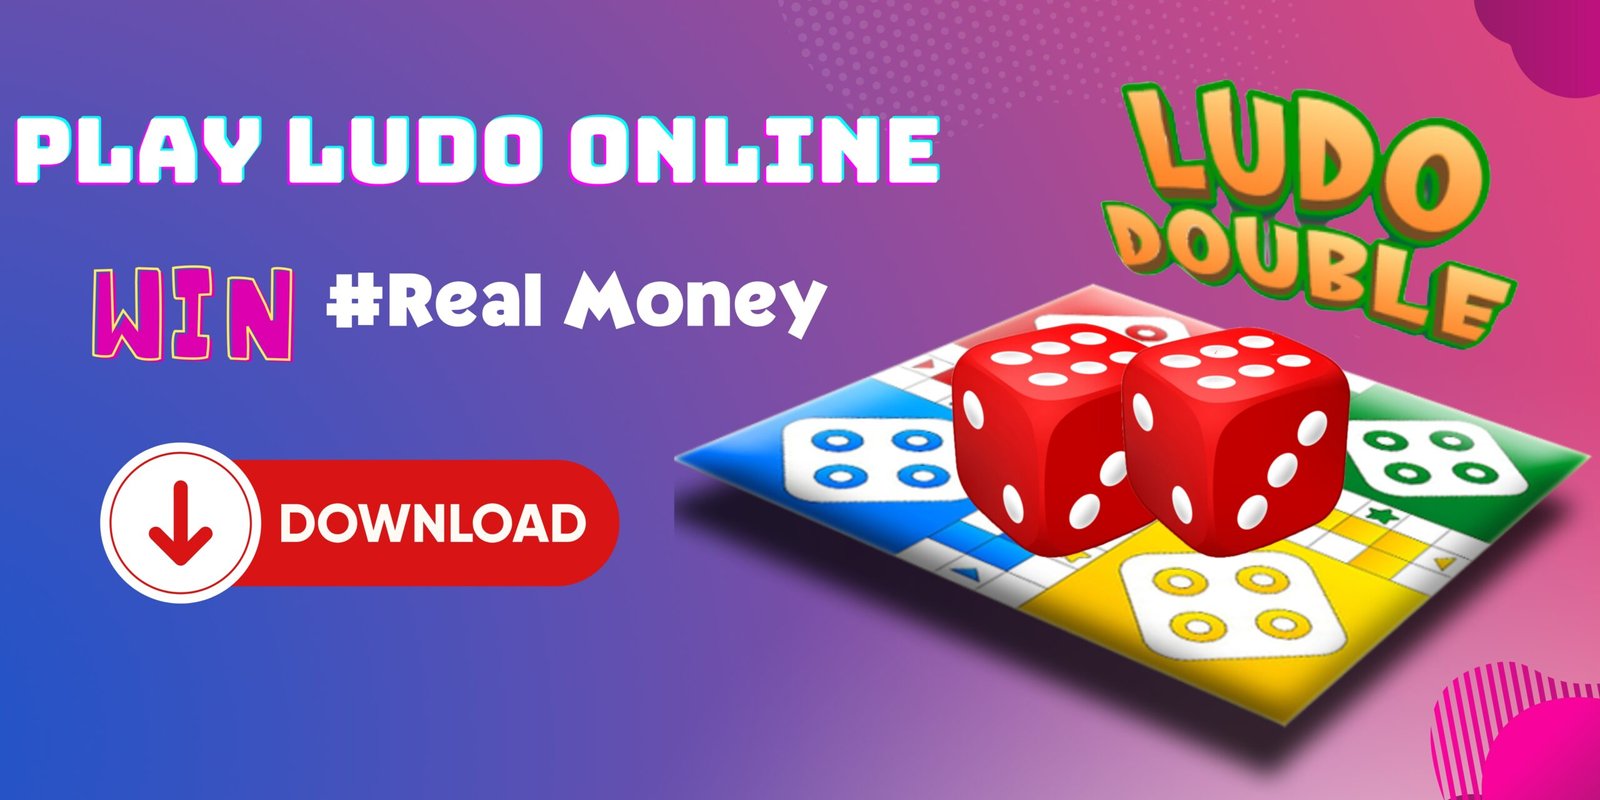 Ludo Cash  Play & Win Real Ludo Cash